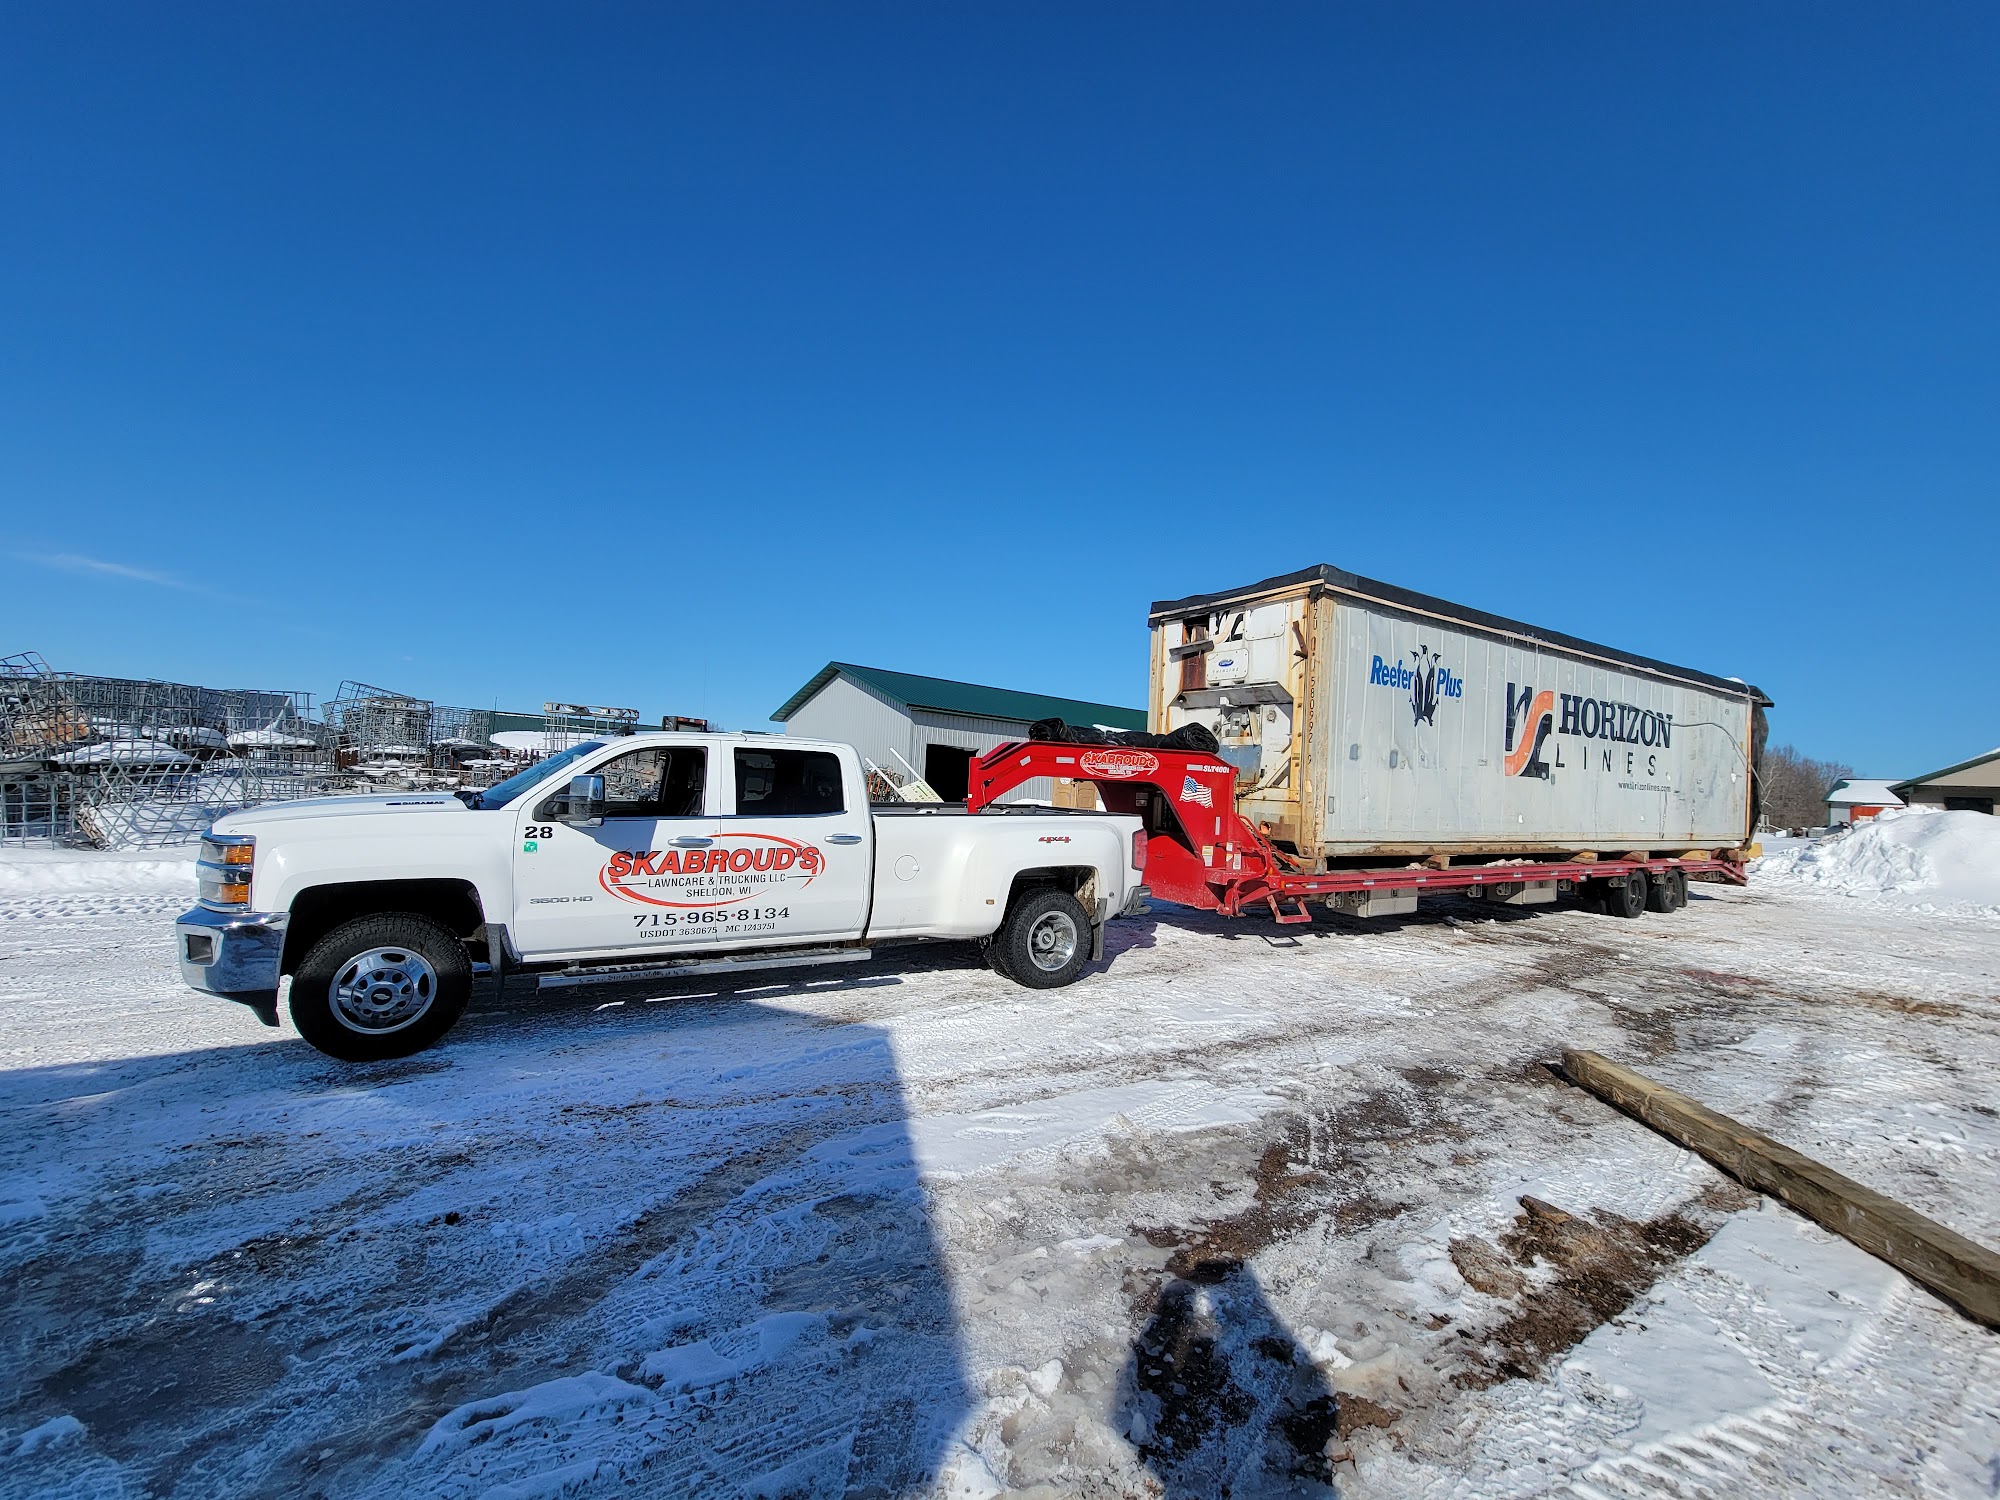 Skabroud’s Lawncare & Trucking LLC N1607 Pioneer Rd, Sheldon Wisconsin 54766